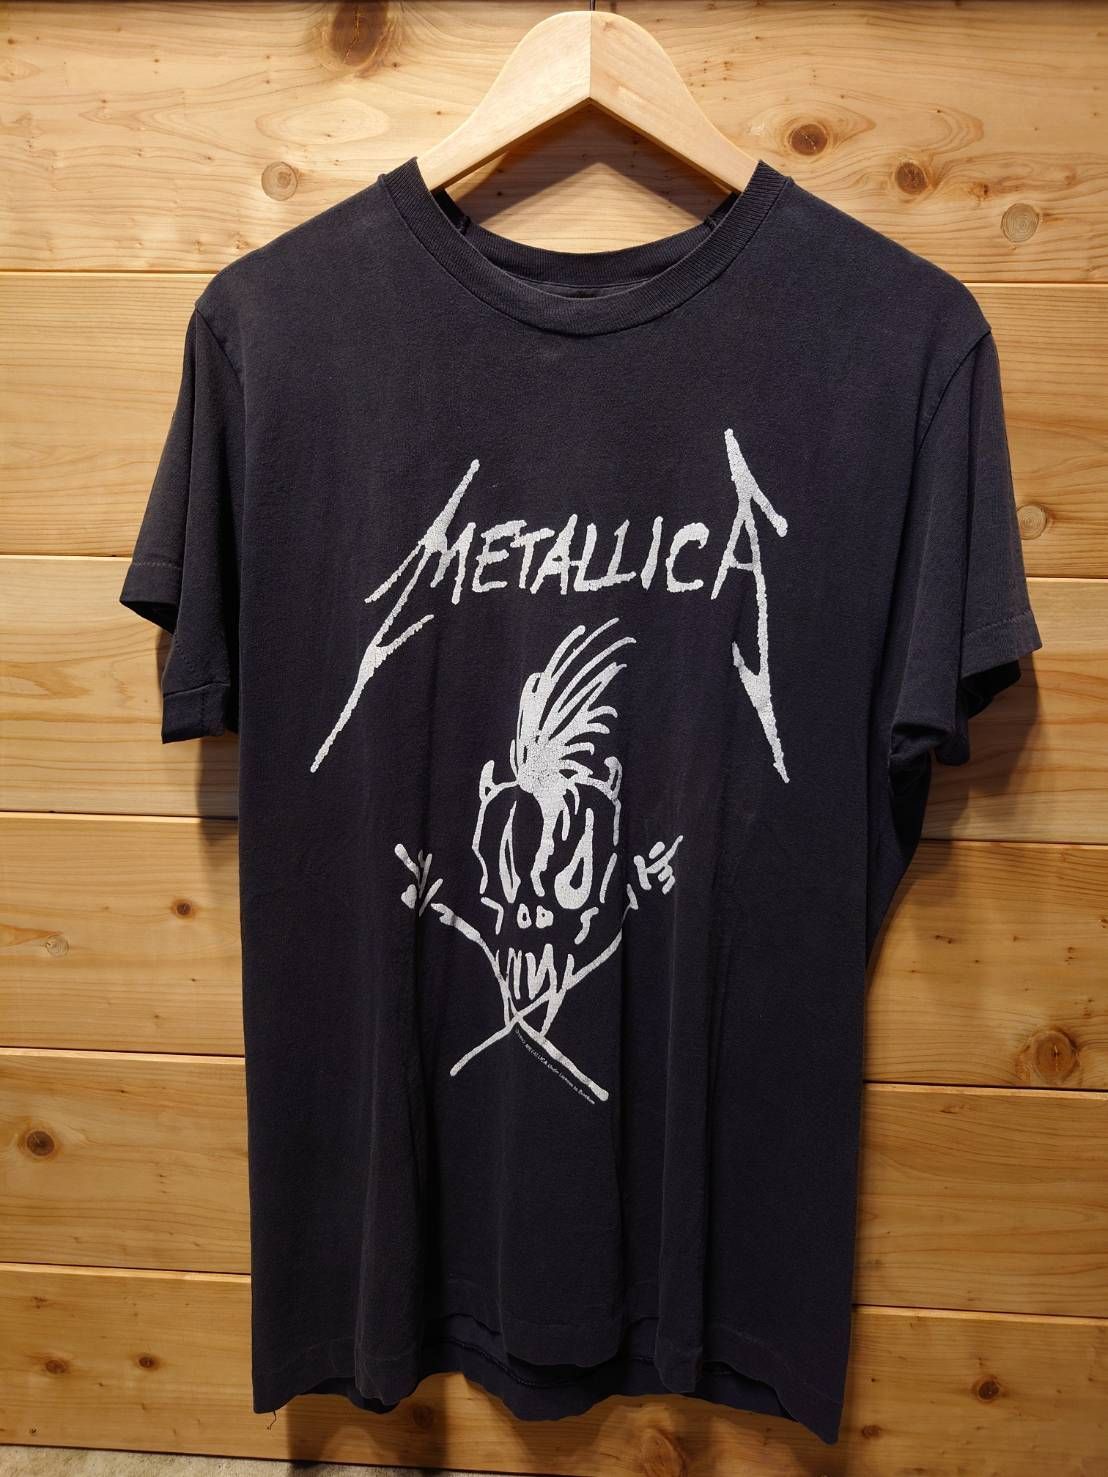 ヴィンテージMETALLICA '93ツアーTシャツ - www.mct.net.sa